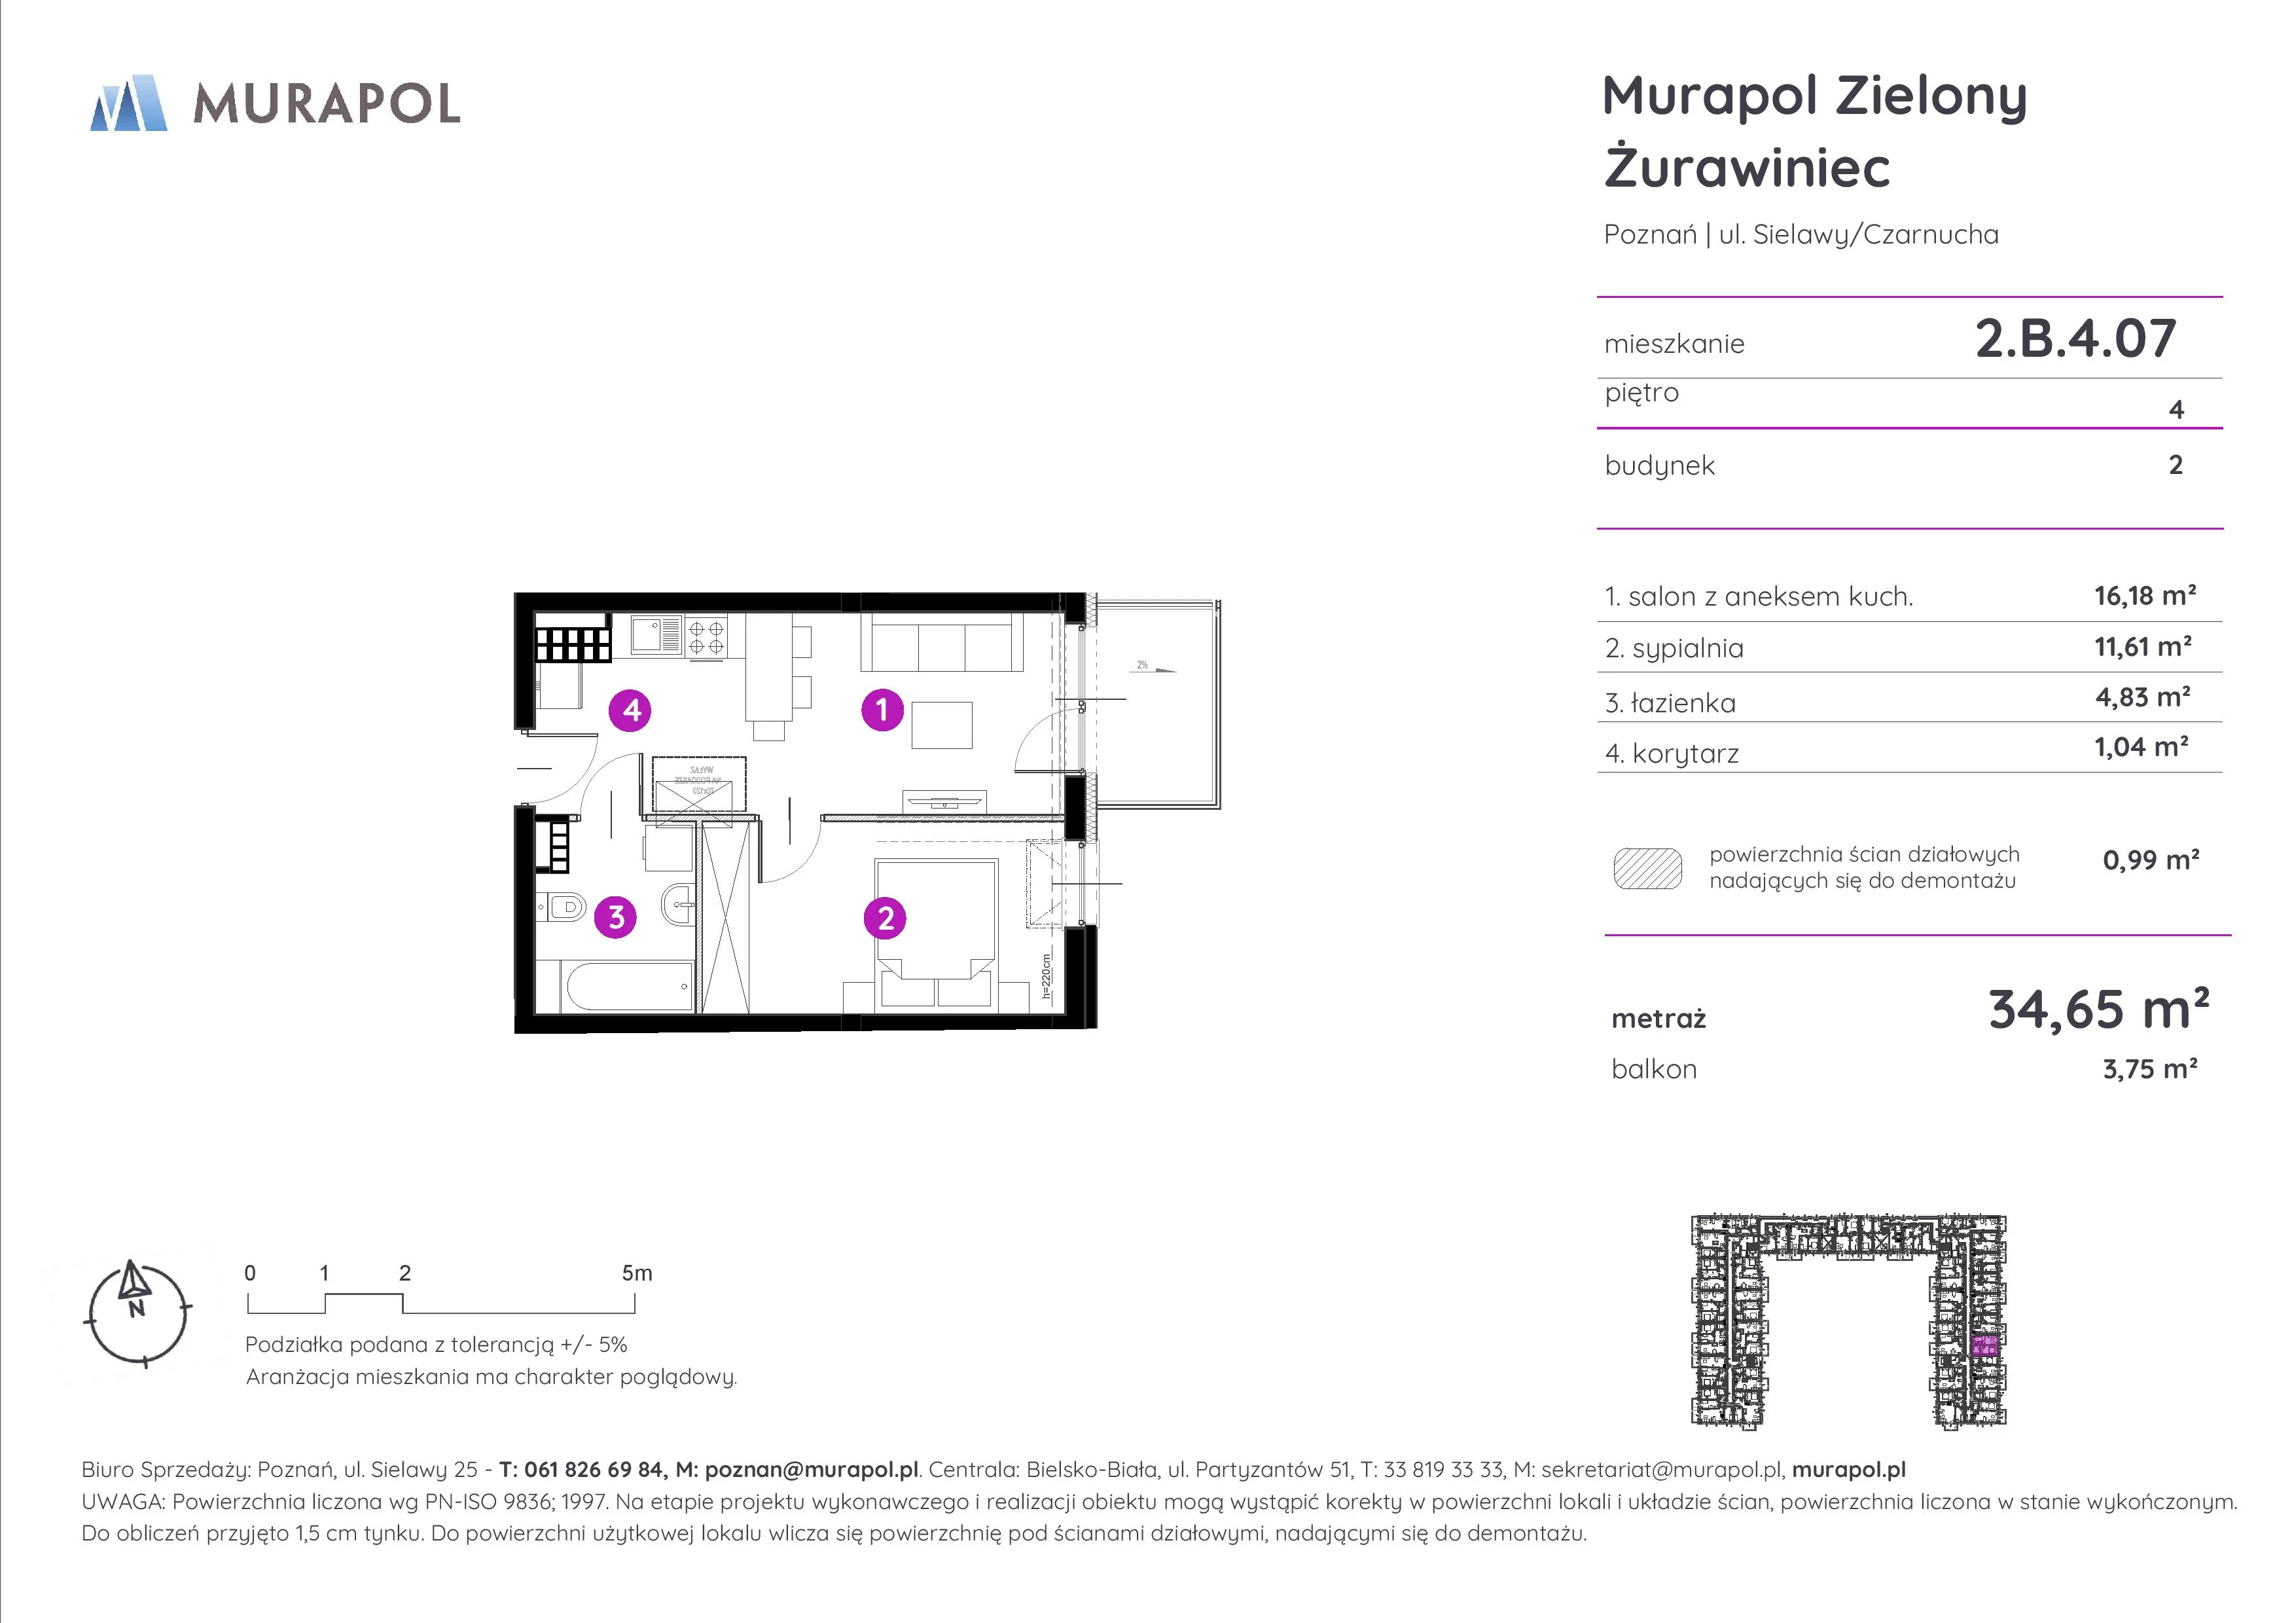 Mieszkanie 34,65 m², piętro 4, oferta nr 2.B.4.07, Murapol Zielony Żurawiniec, Poznań, Naramowice, ul. Sielawy